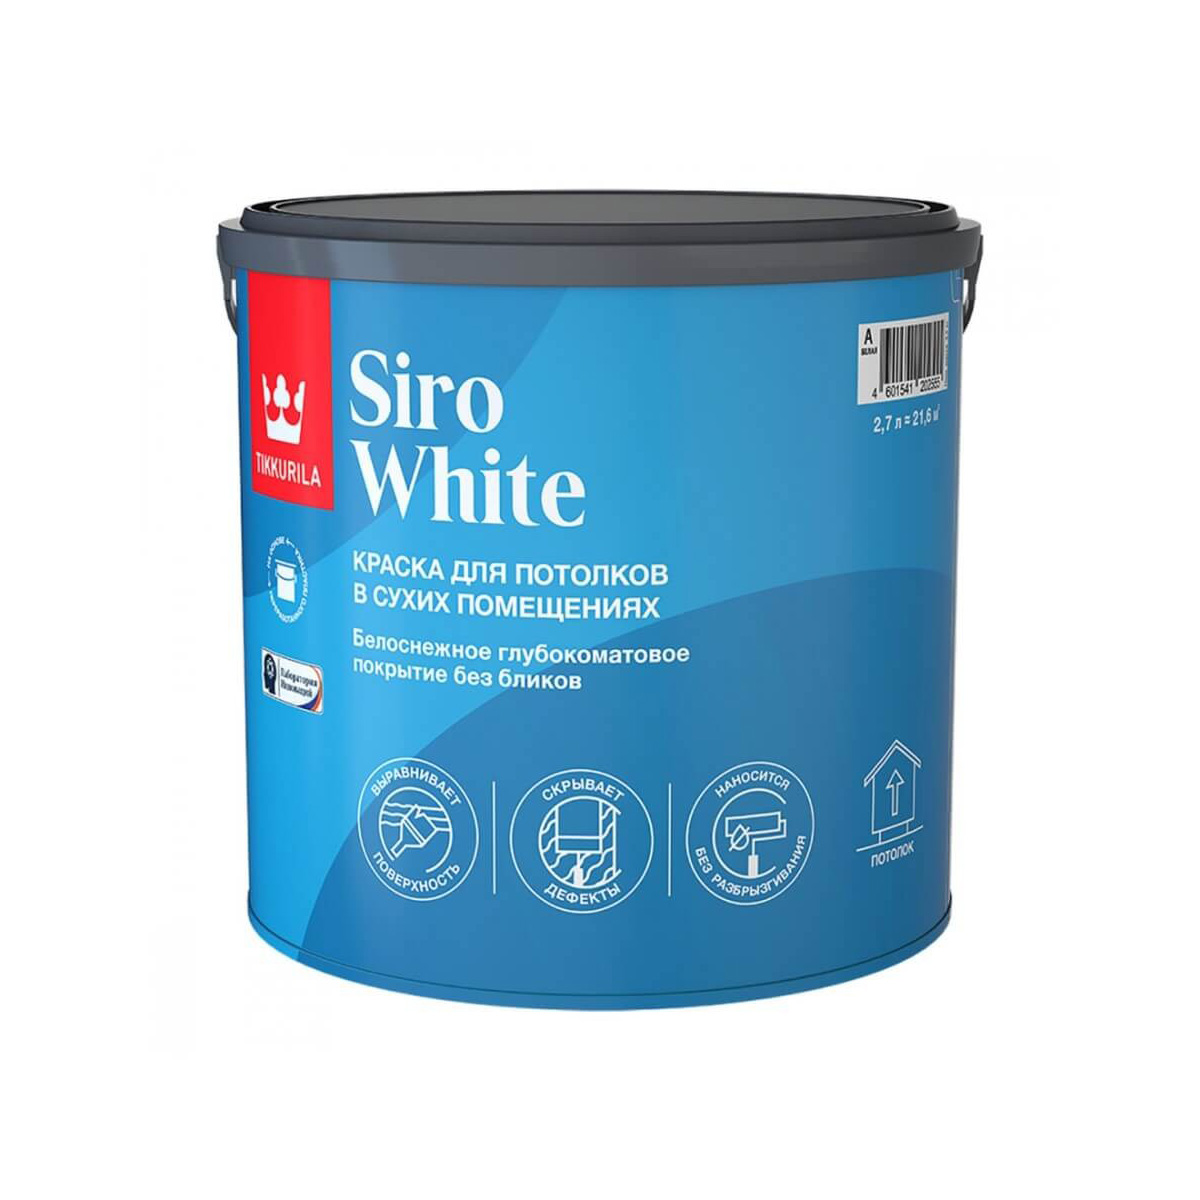 Сиро white ap 2,7 л (1) краска для потолков "тиккурила"